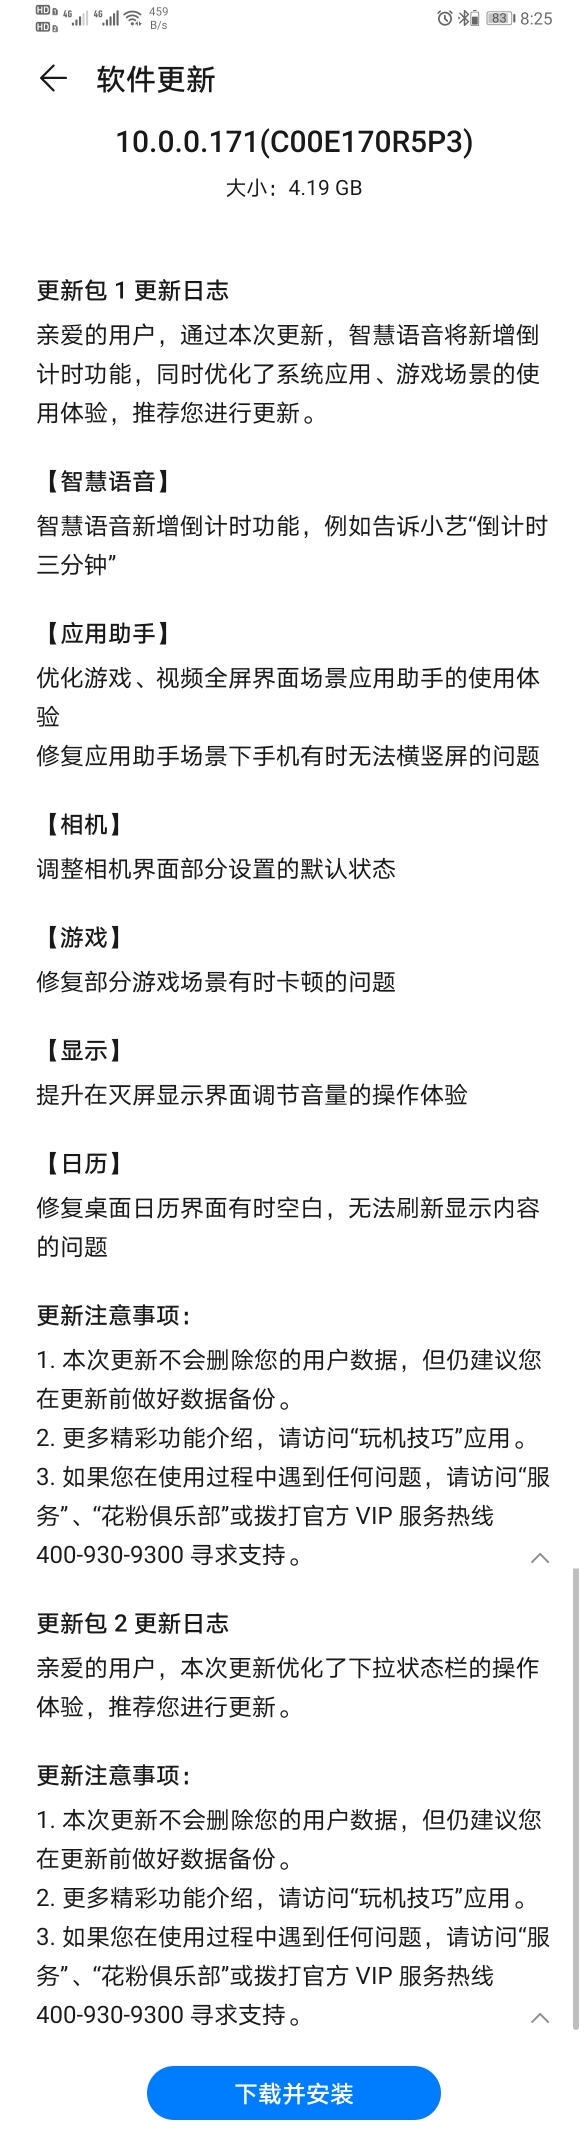 Huawei Mate 30 Pro 5G EMUI 10 China